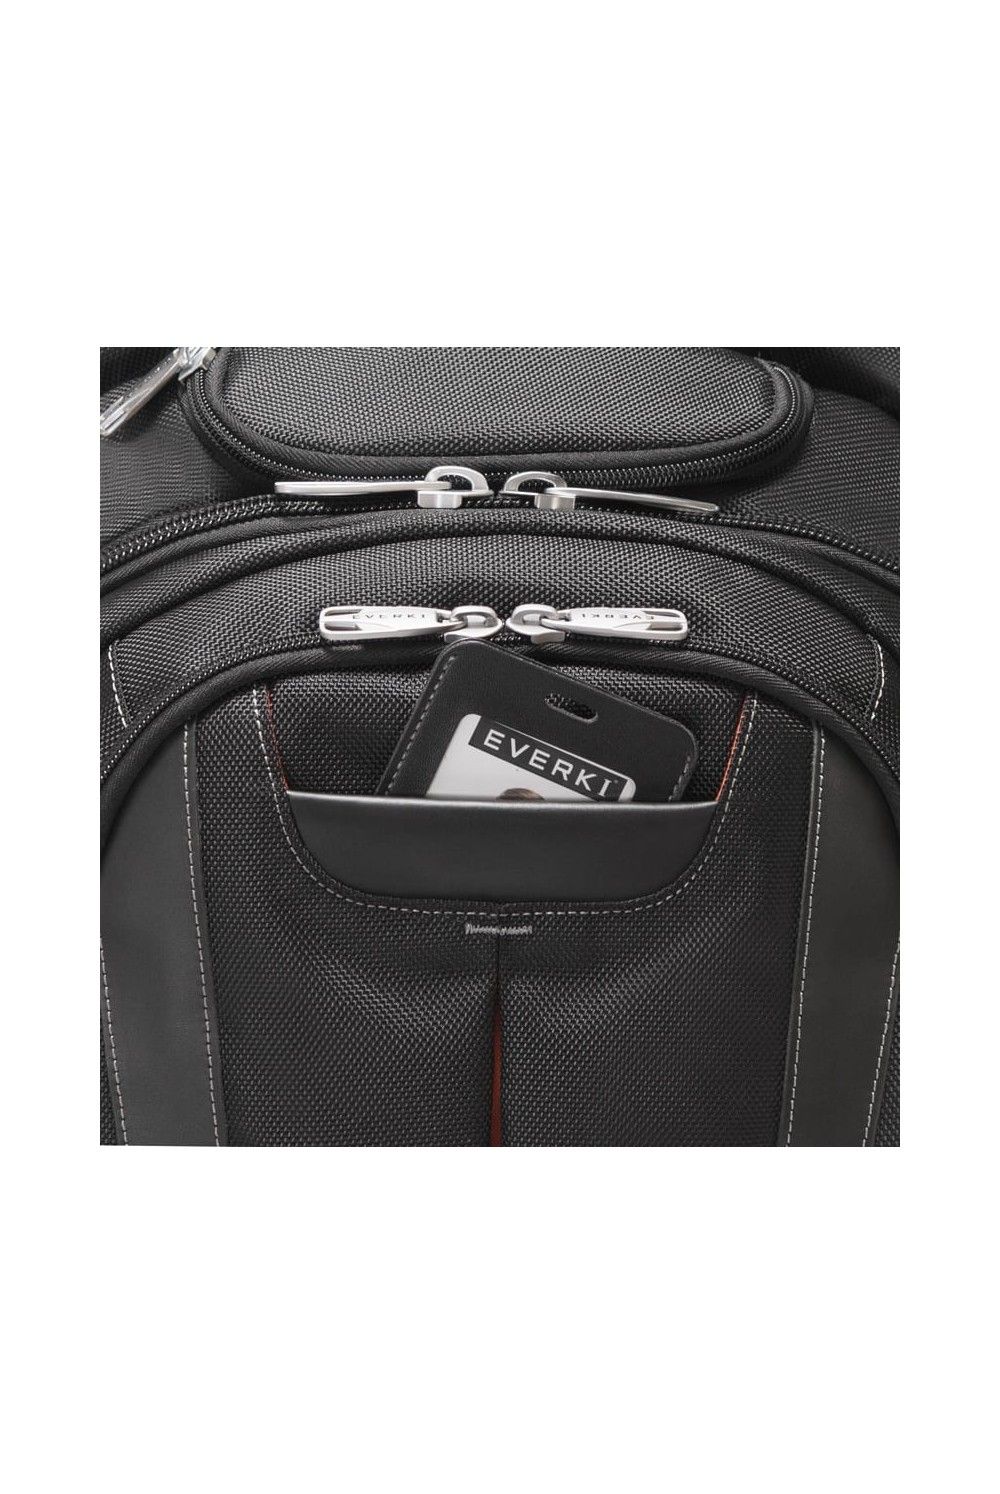 Laptop Backpack Concept 2 Everki 17.3 inch